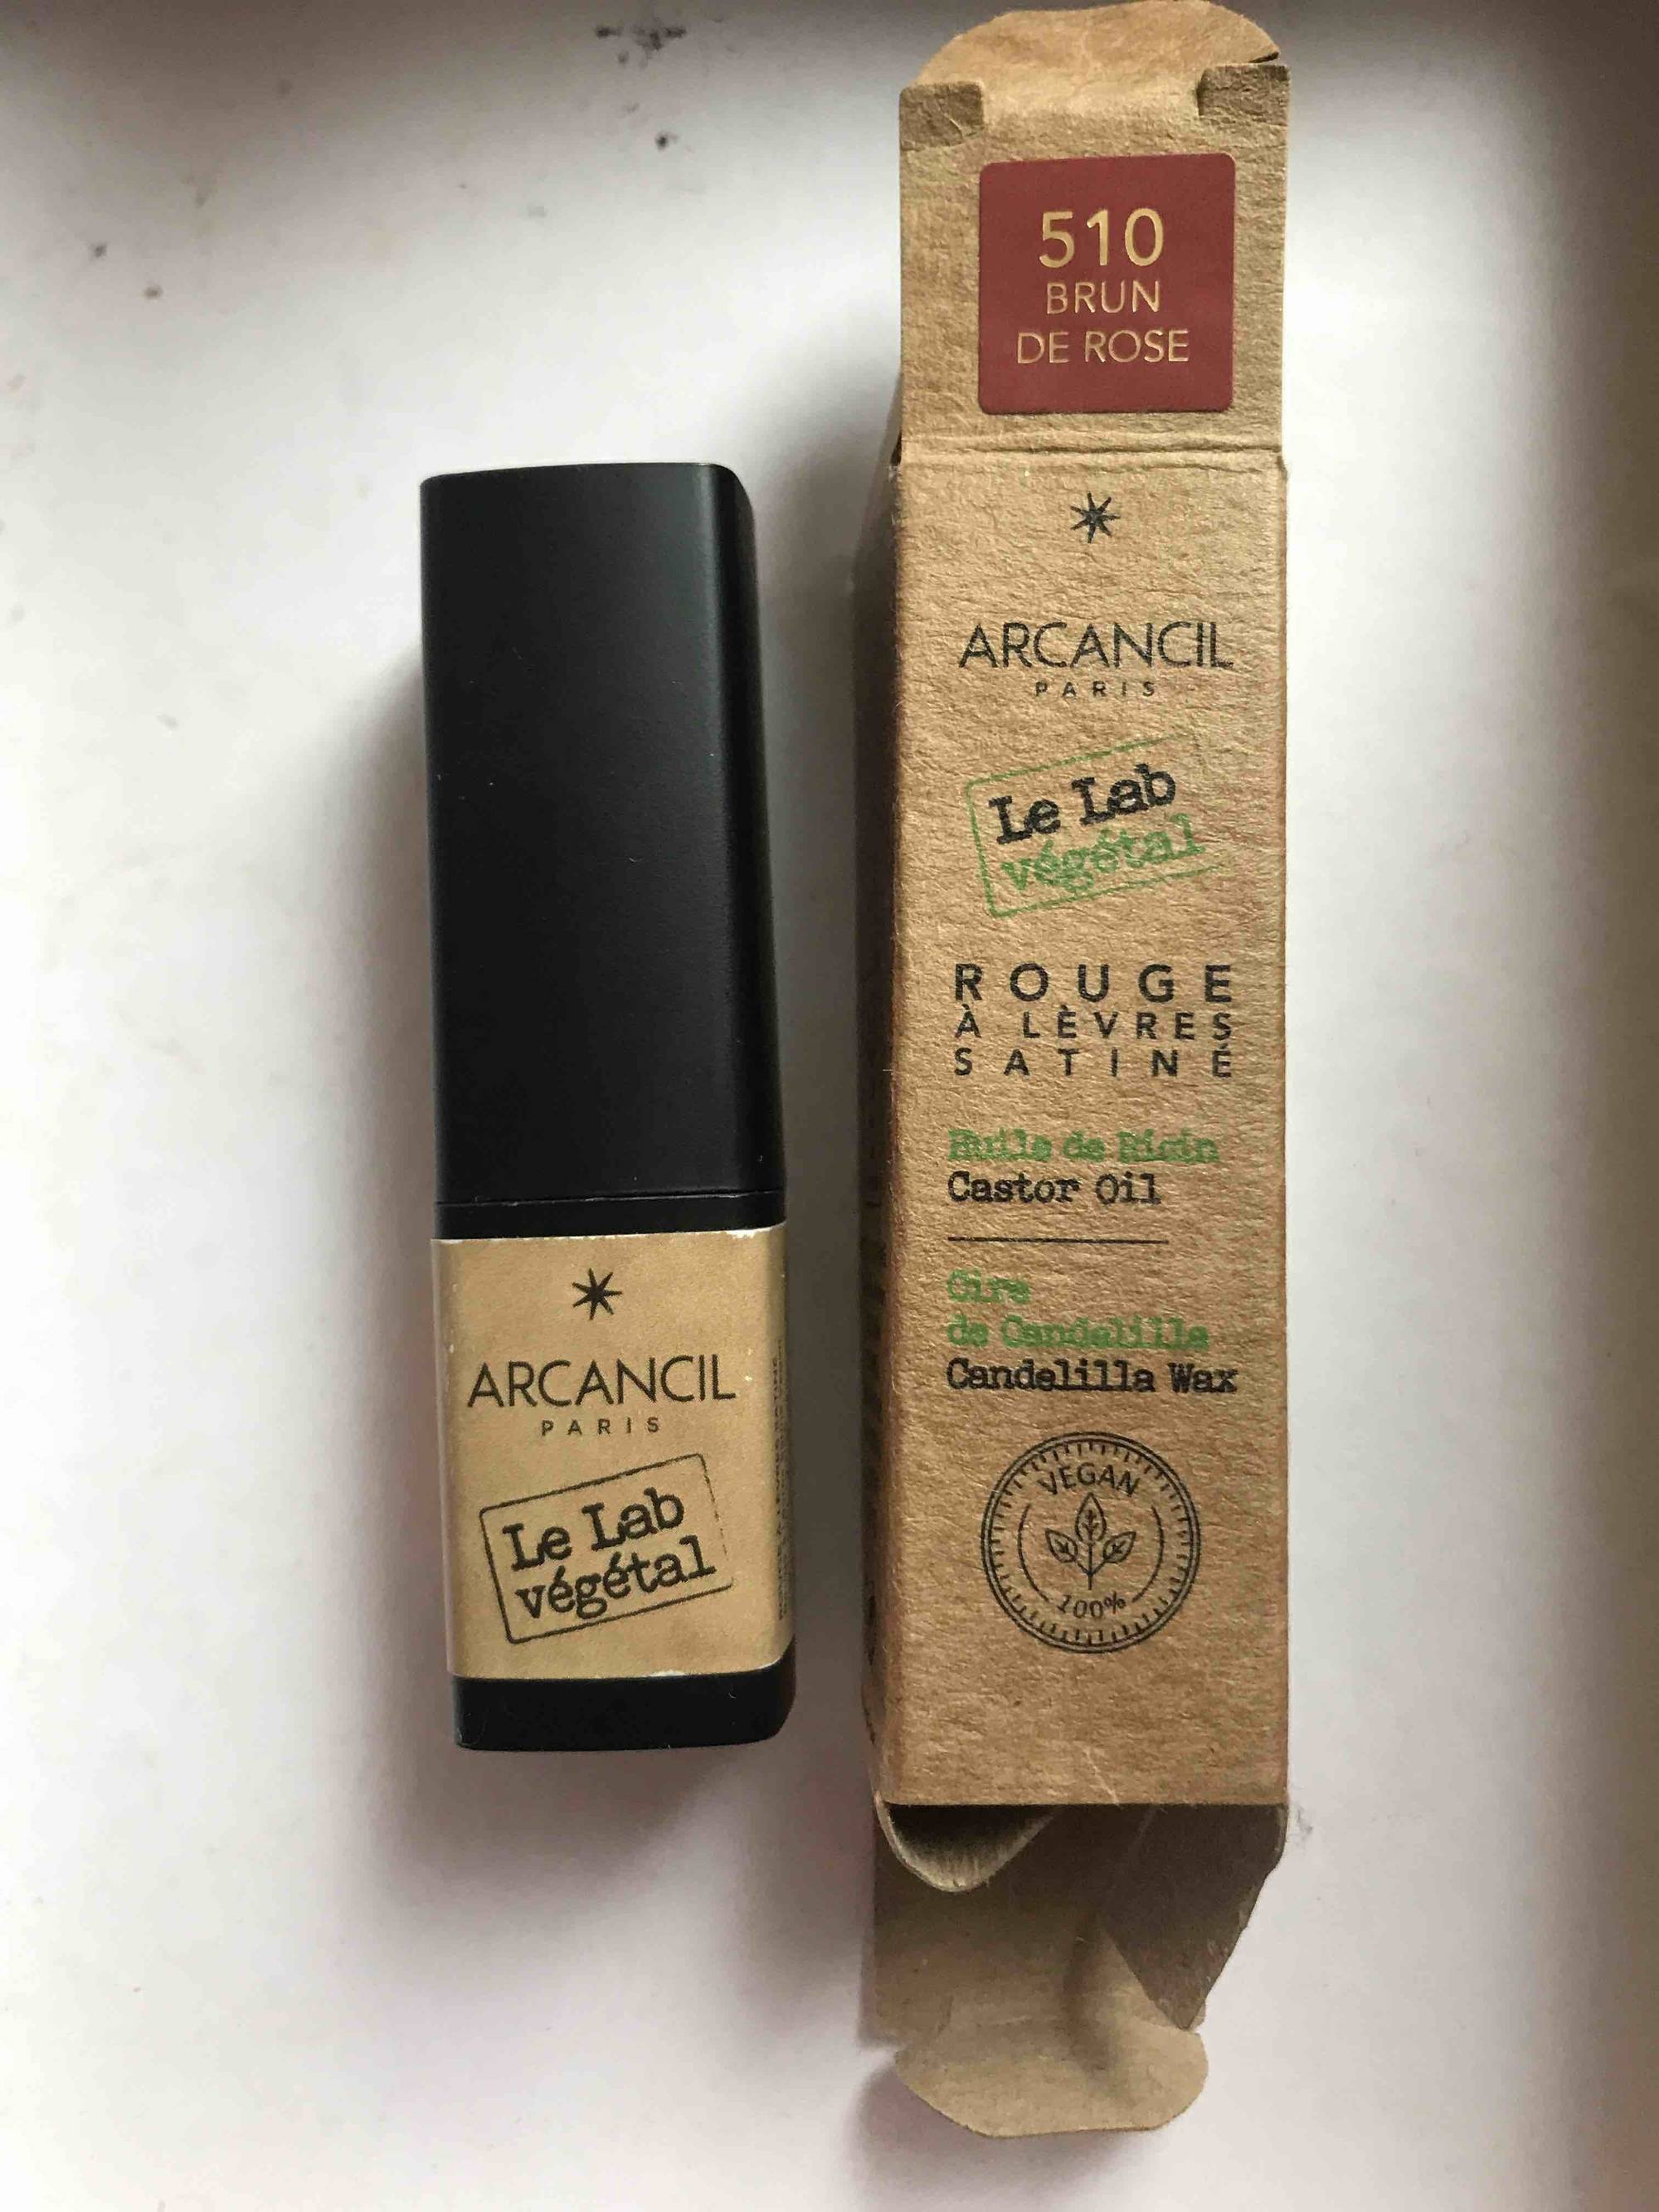 ARCANCIL - Le lab végétal - Rouge à lèvre satiné